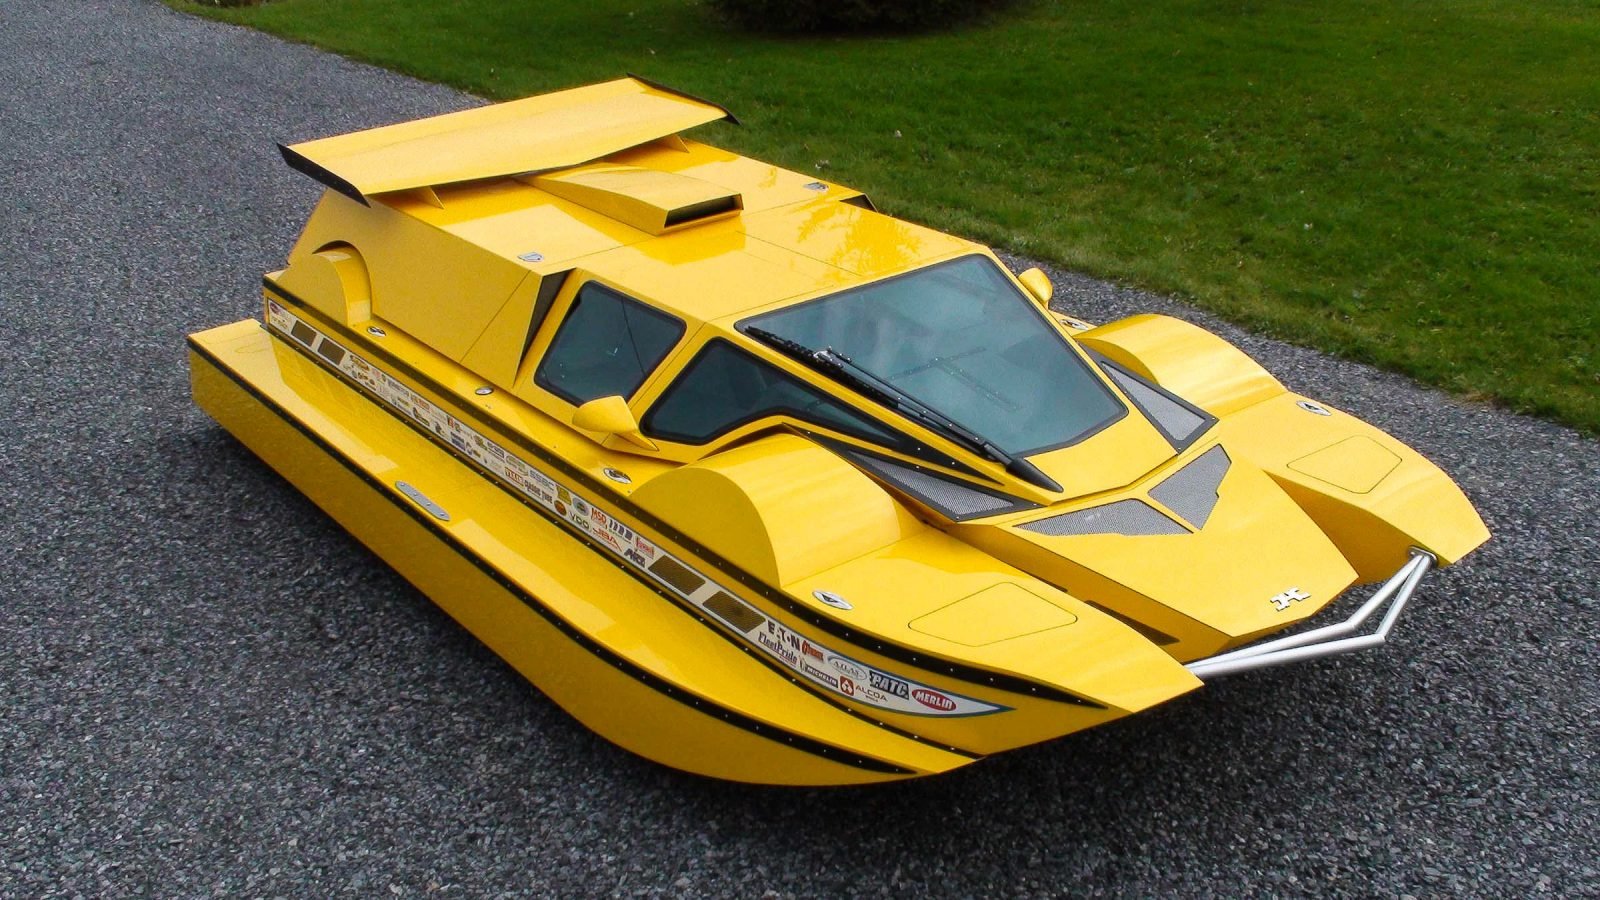 The Amphibious Dobbertin HydroCar A 1 Million Dollar 762 HP Boat/Car